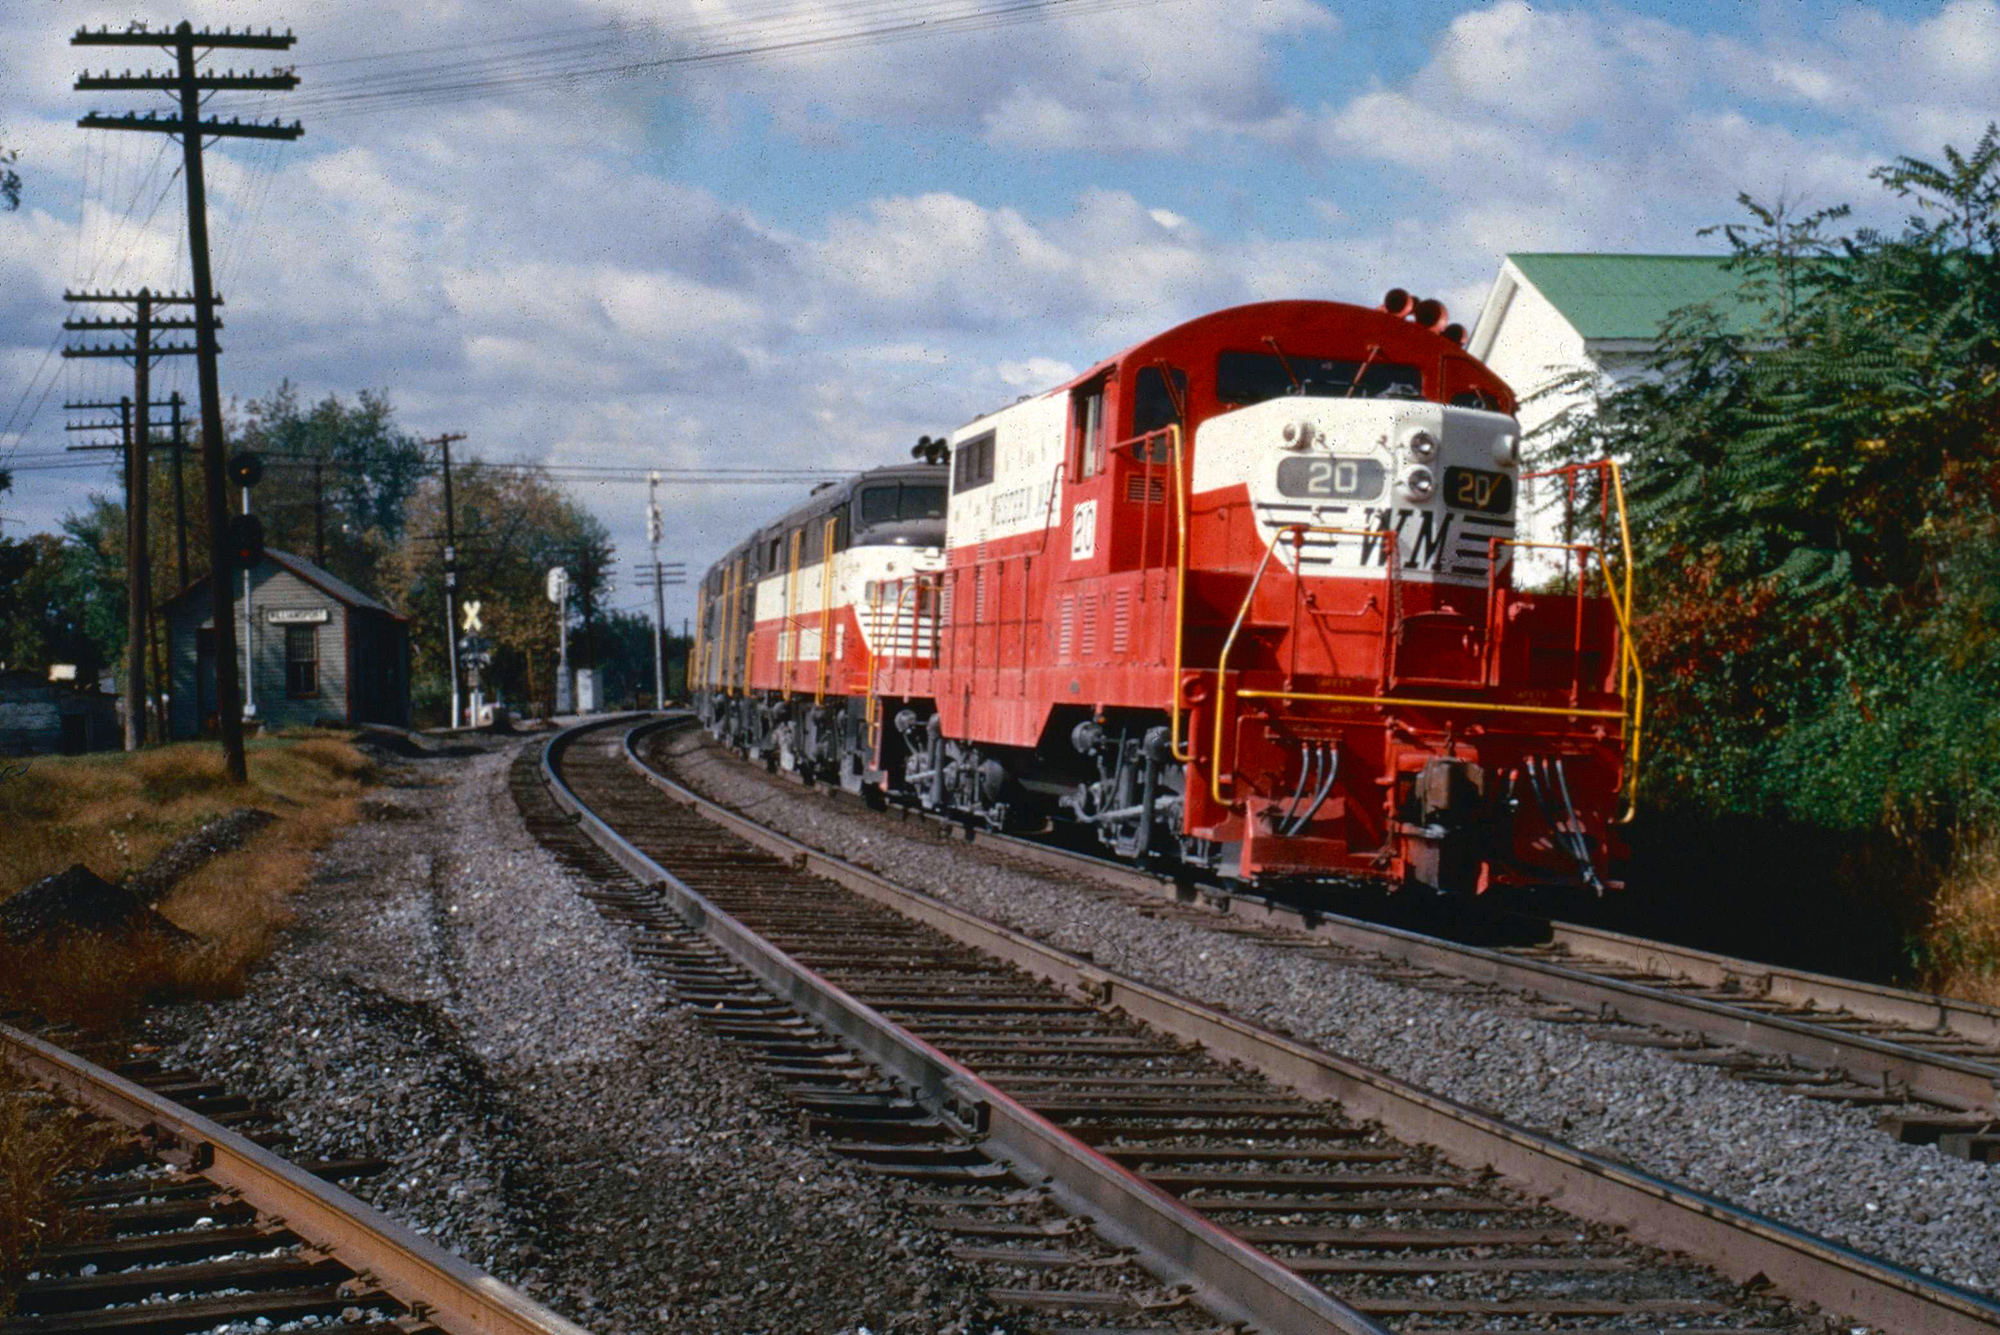 Western Maryland Railway 